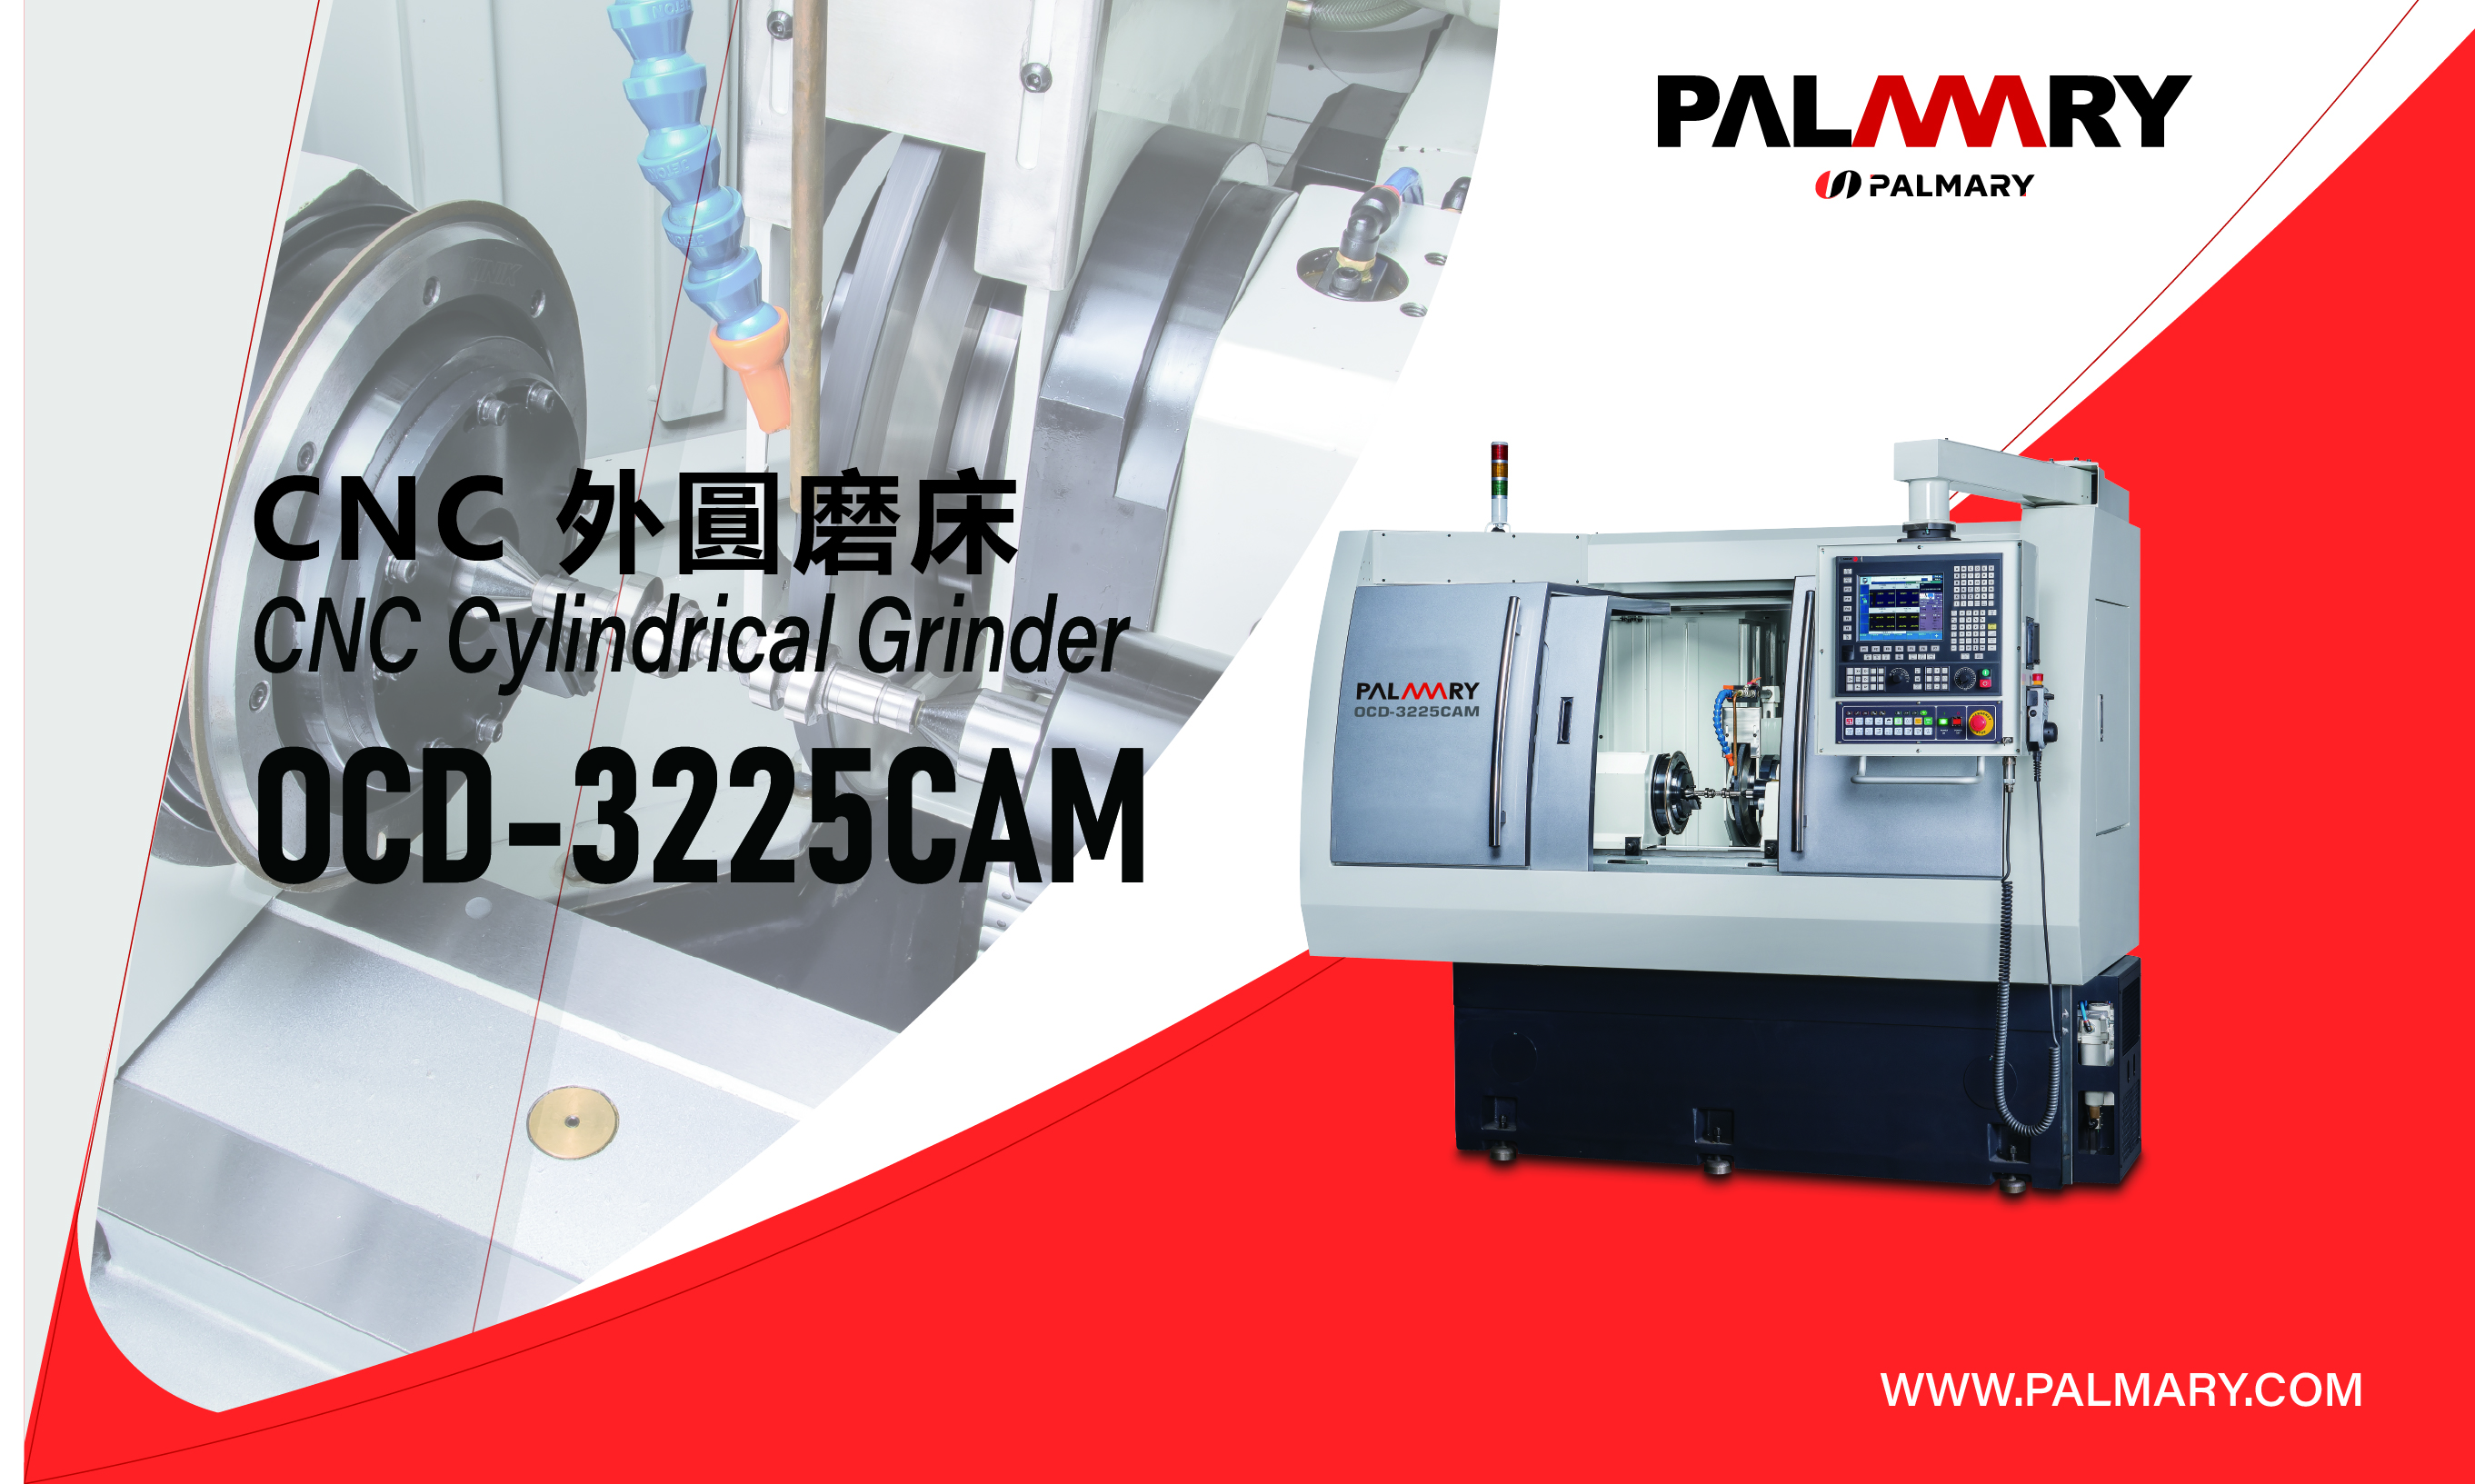 型錄|PALMARY|OCD-32100CAM - CNC外圓磨床 [CAM系列] -異形研磨